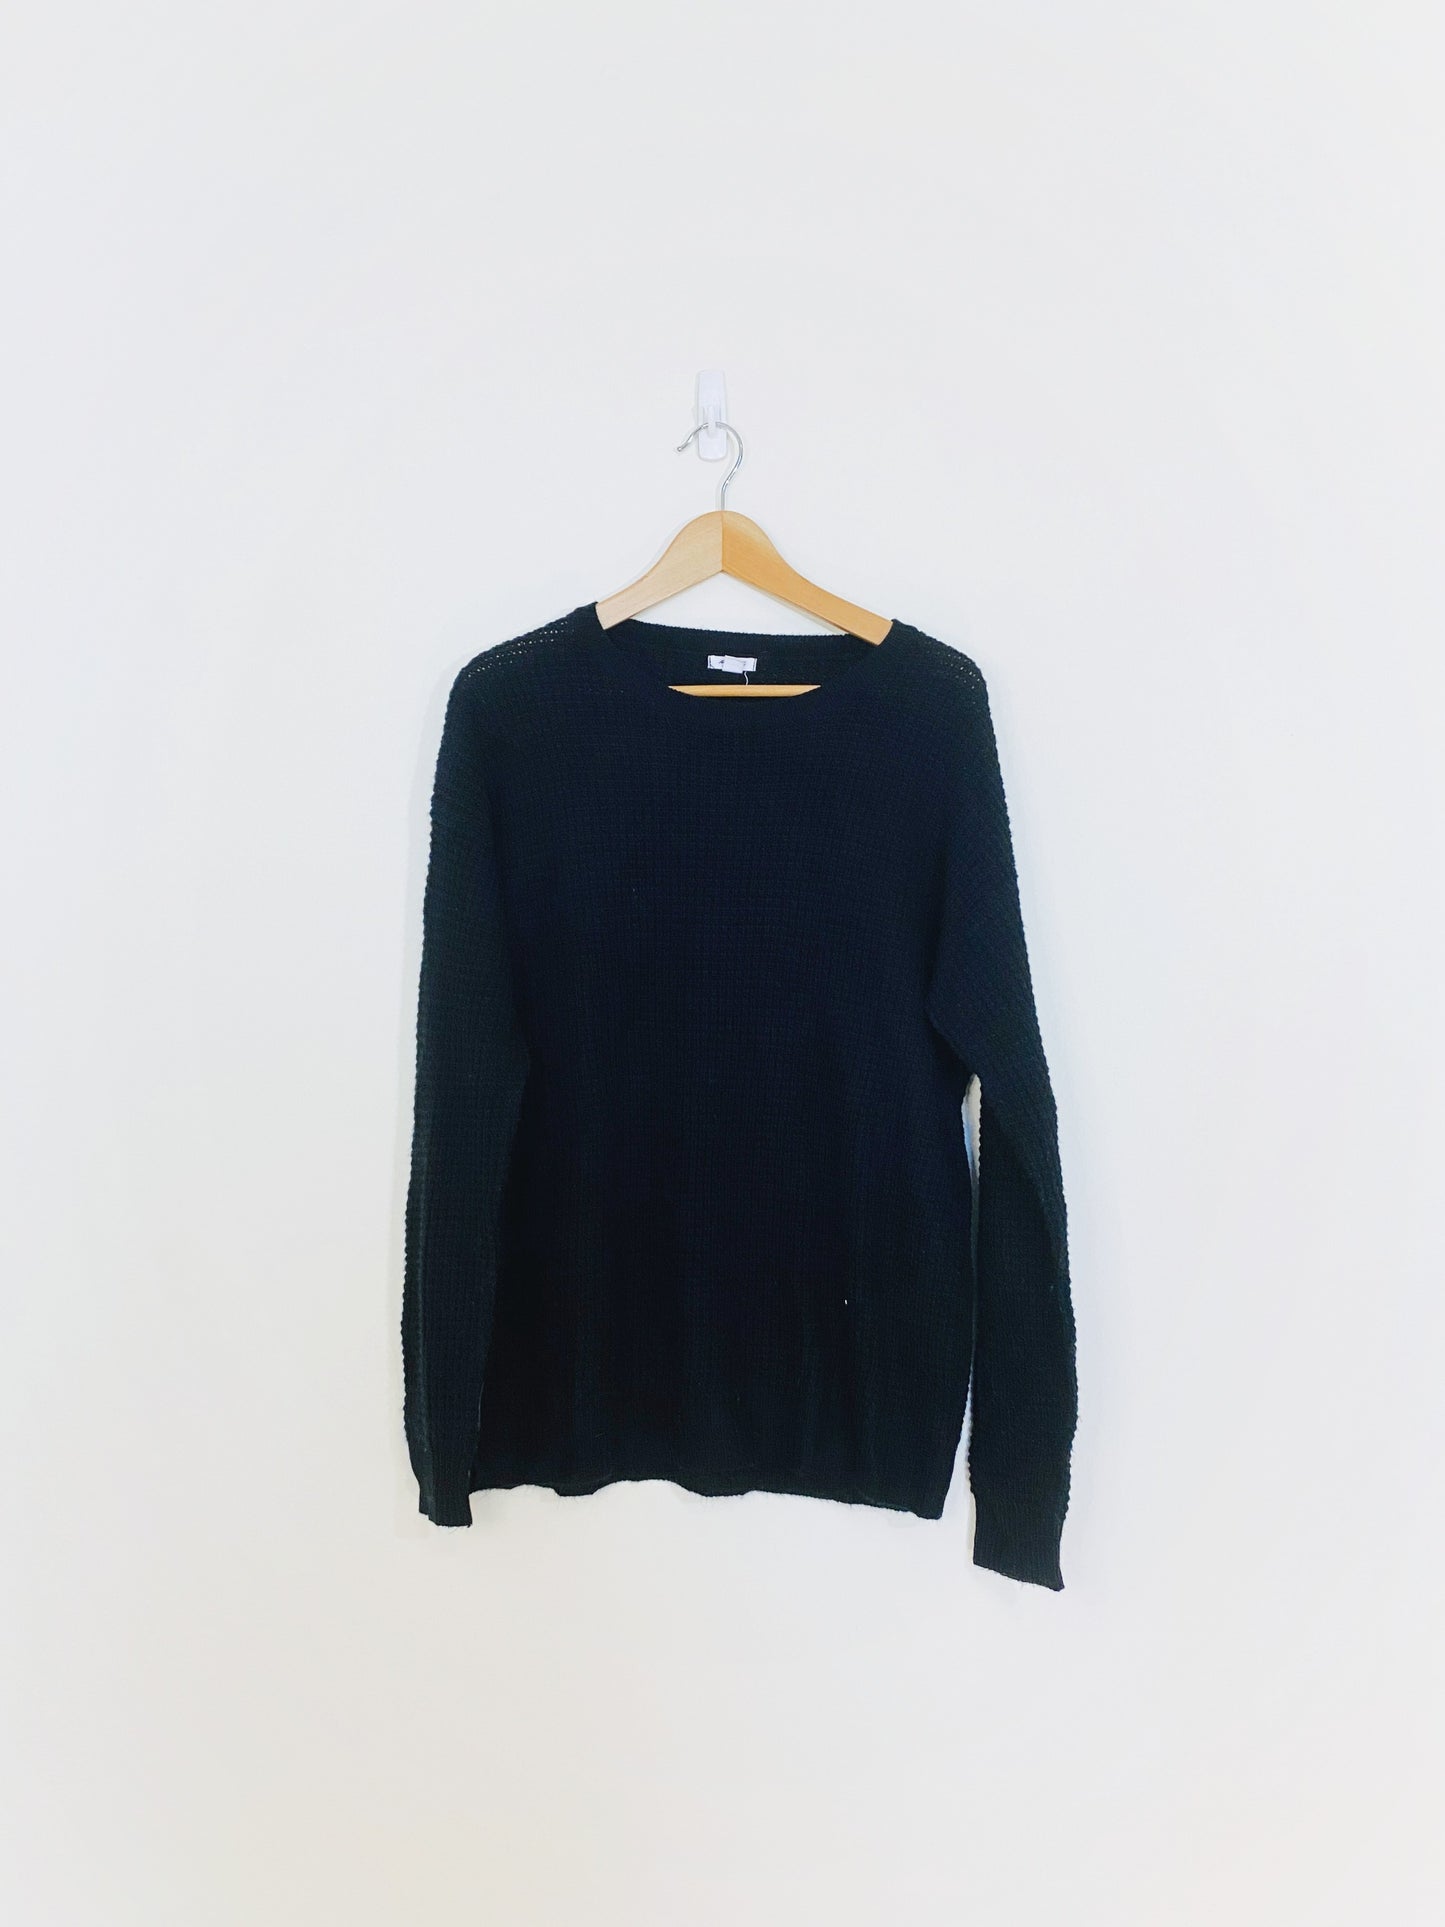 Black Waffle Knit Sweater (XL)